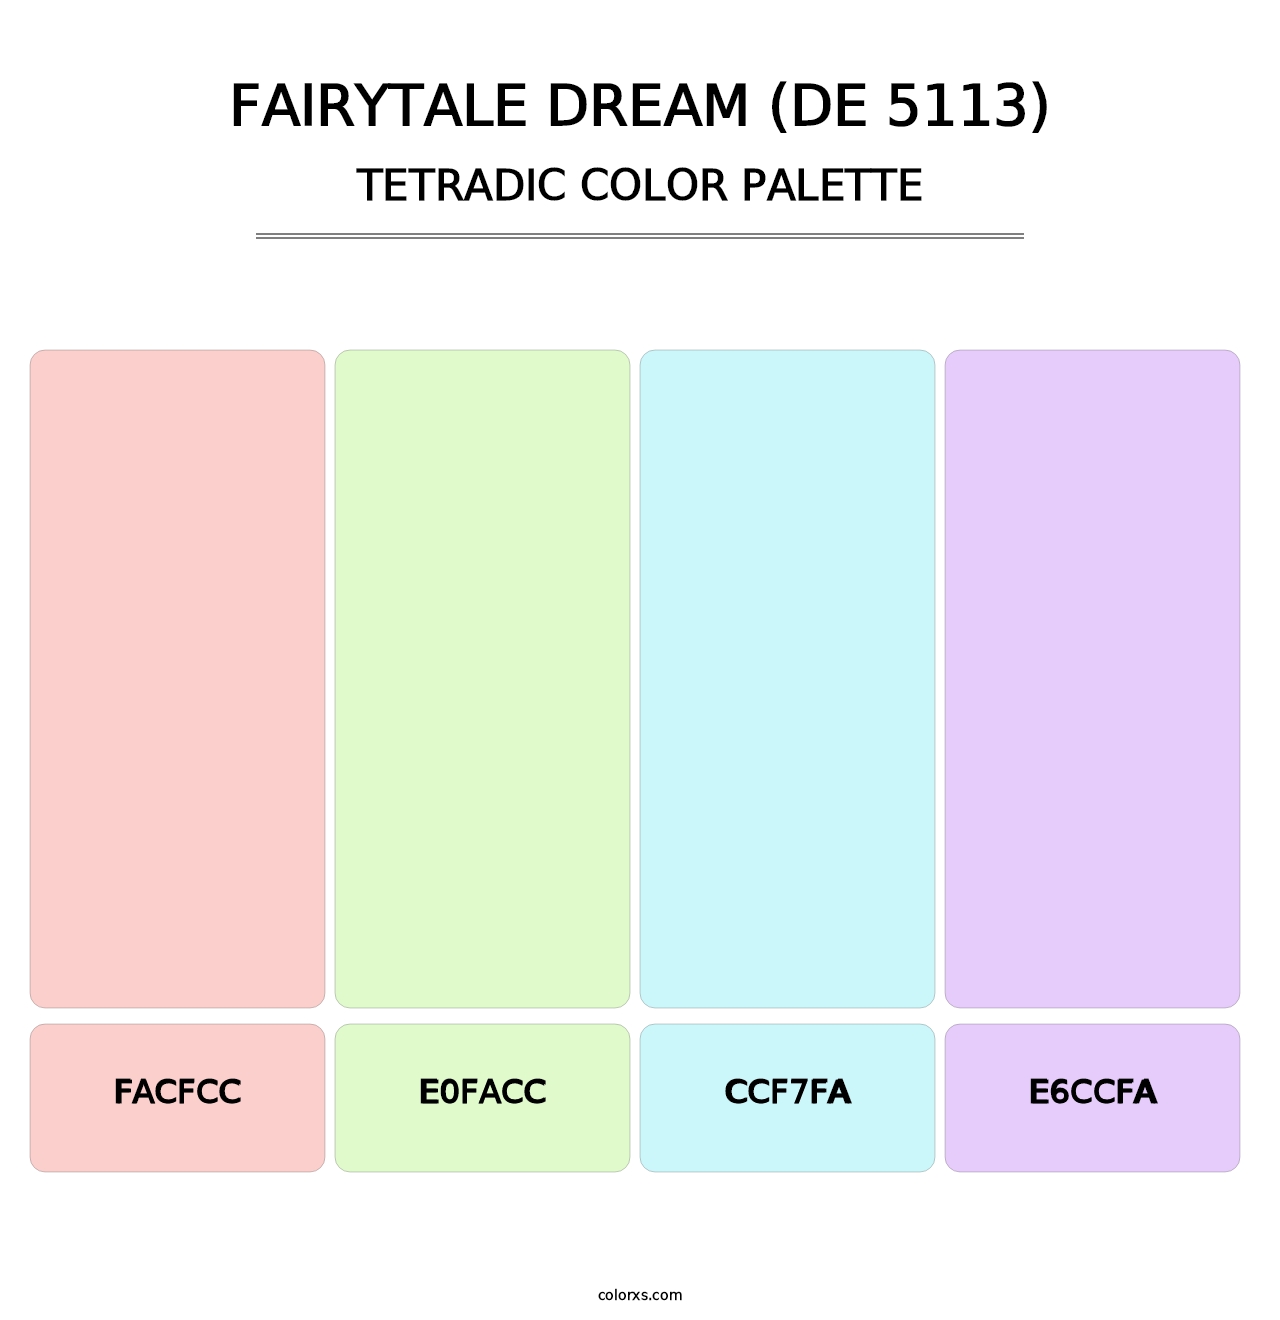 Fairytale Dream (DE 5113) - Tetradic Color Palette